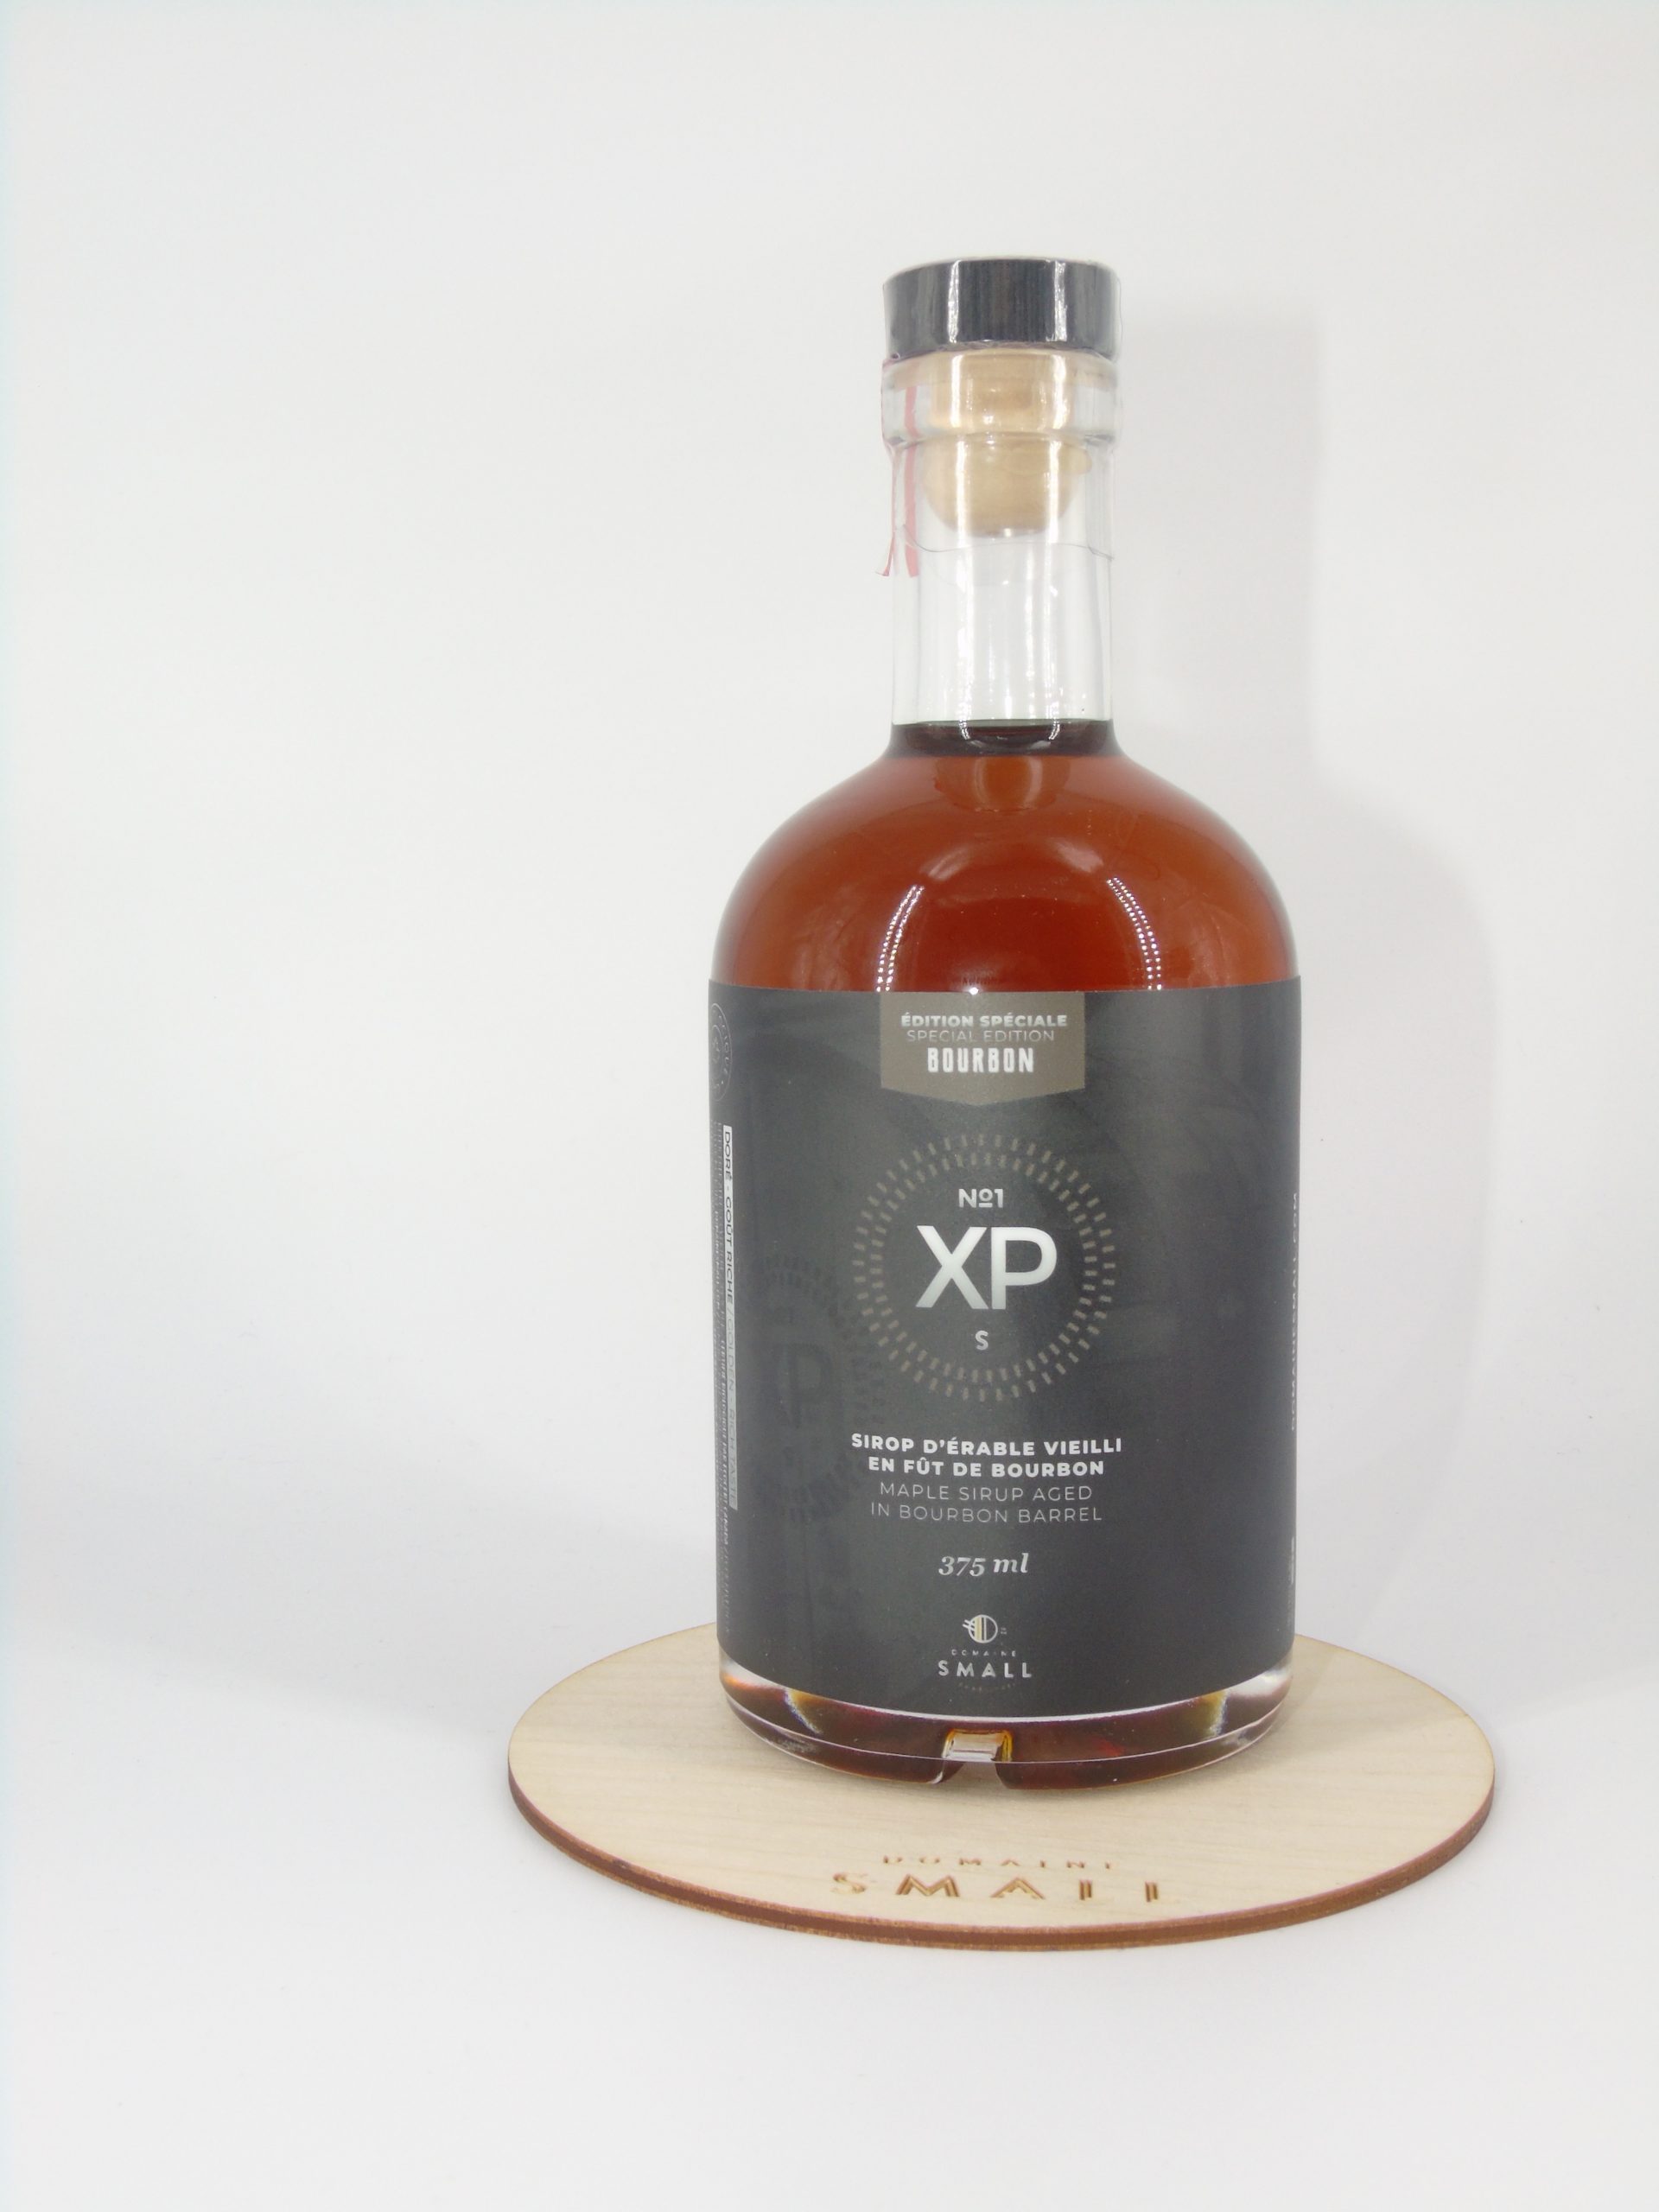 XP viellit en fût de Bourbon 375ml - Domaine small